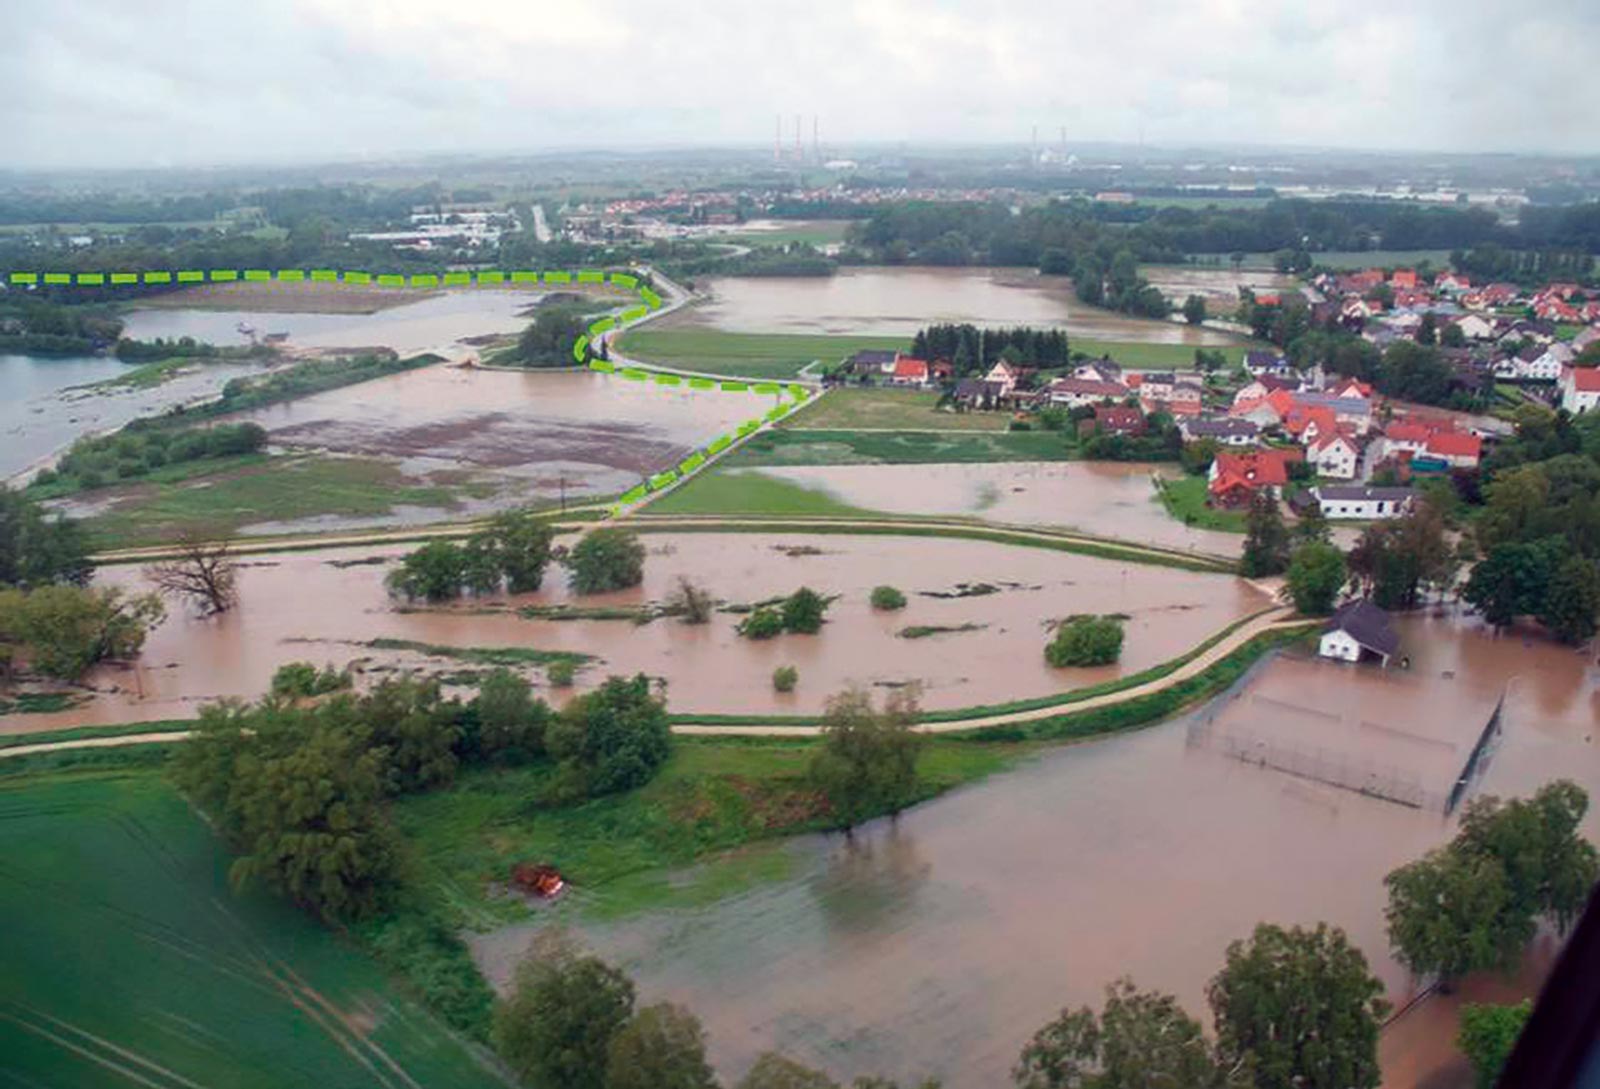 Eine Verbesserung des Hochwasserschutzes durch beim Abbau und Wiederherrichten integrierte Hochwasserschutzmaßnahmen ist geplant.